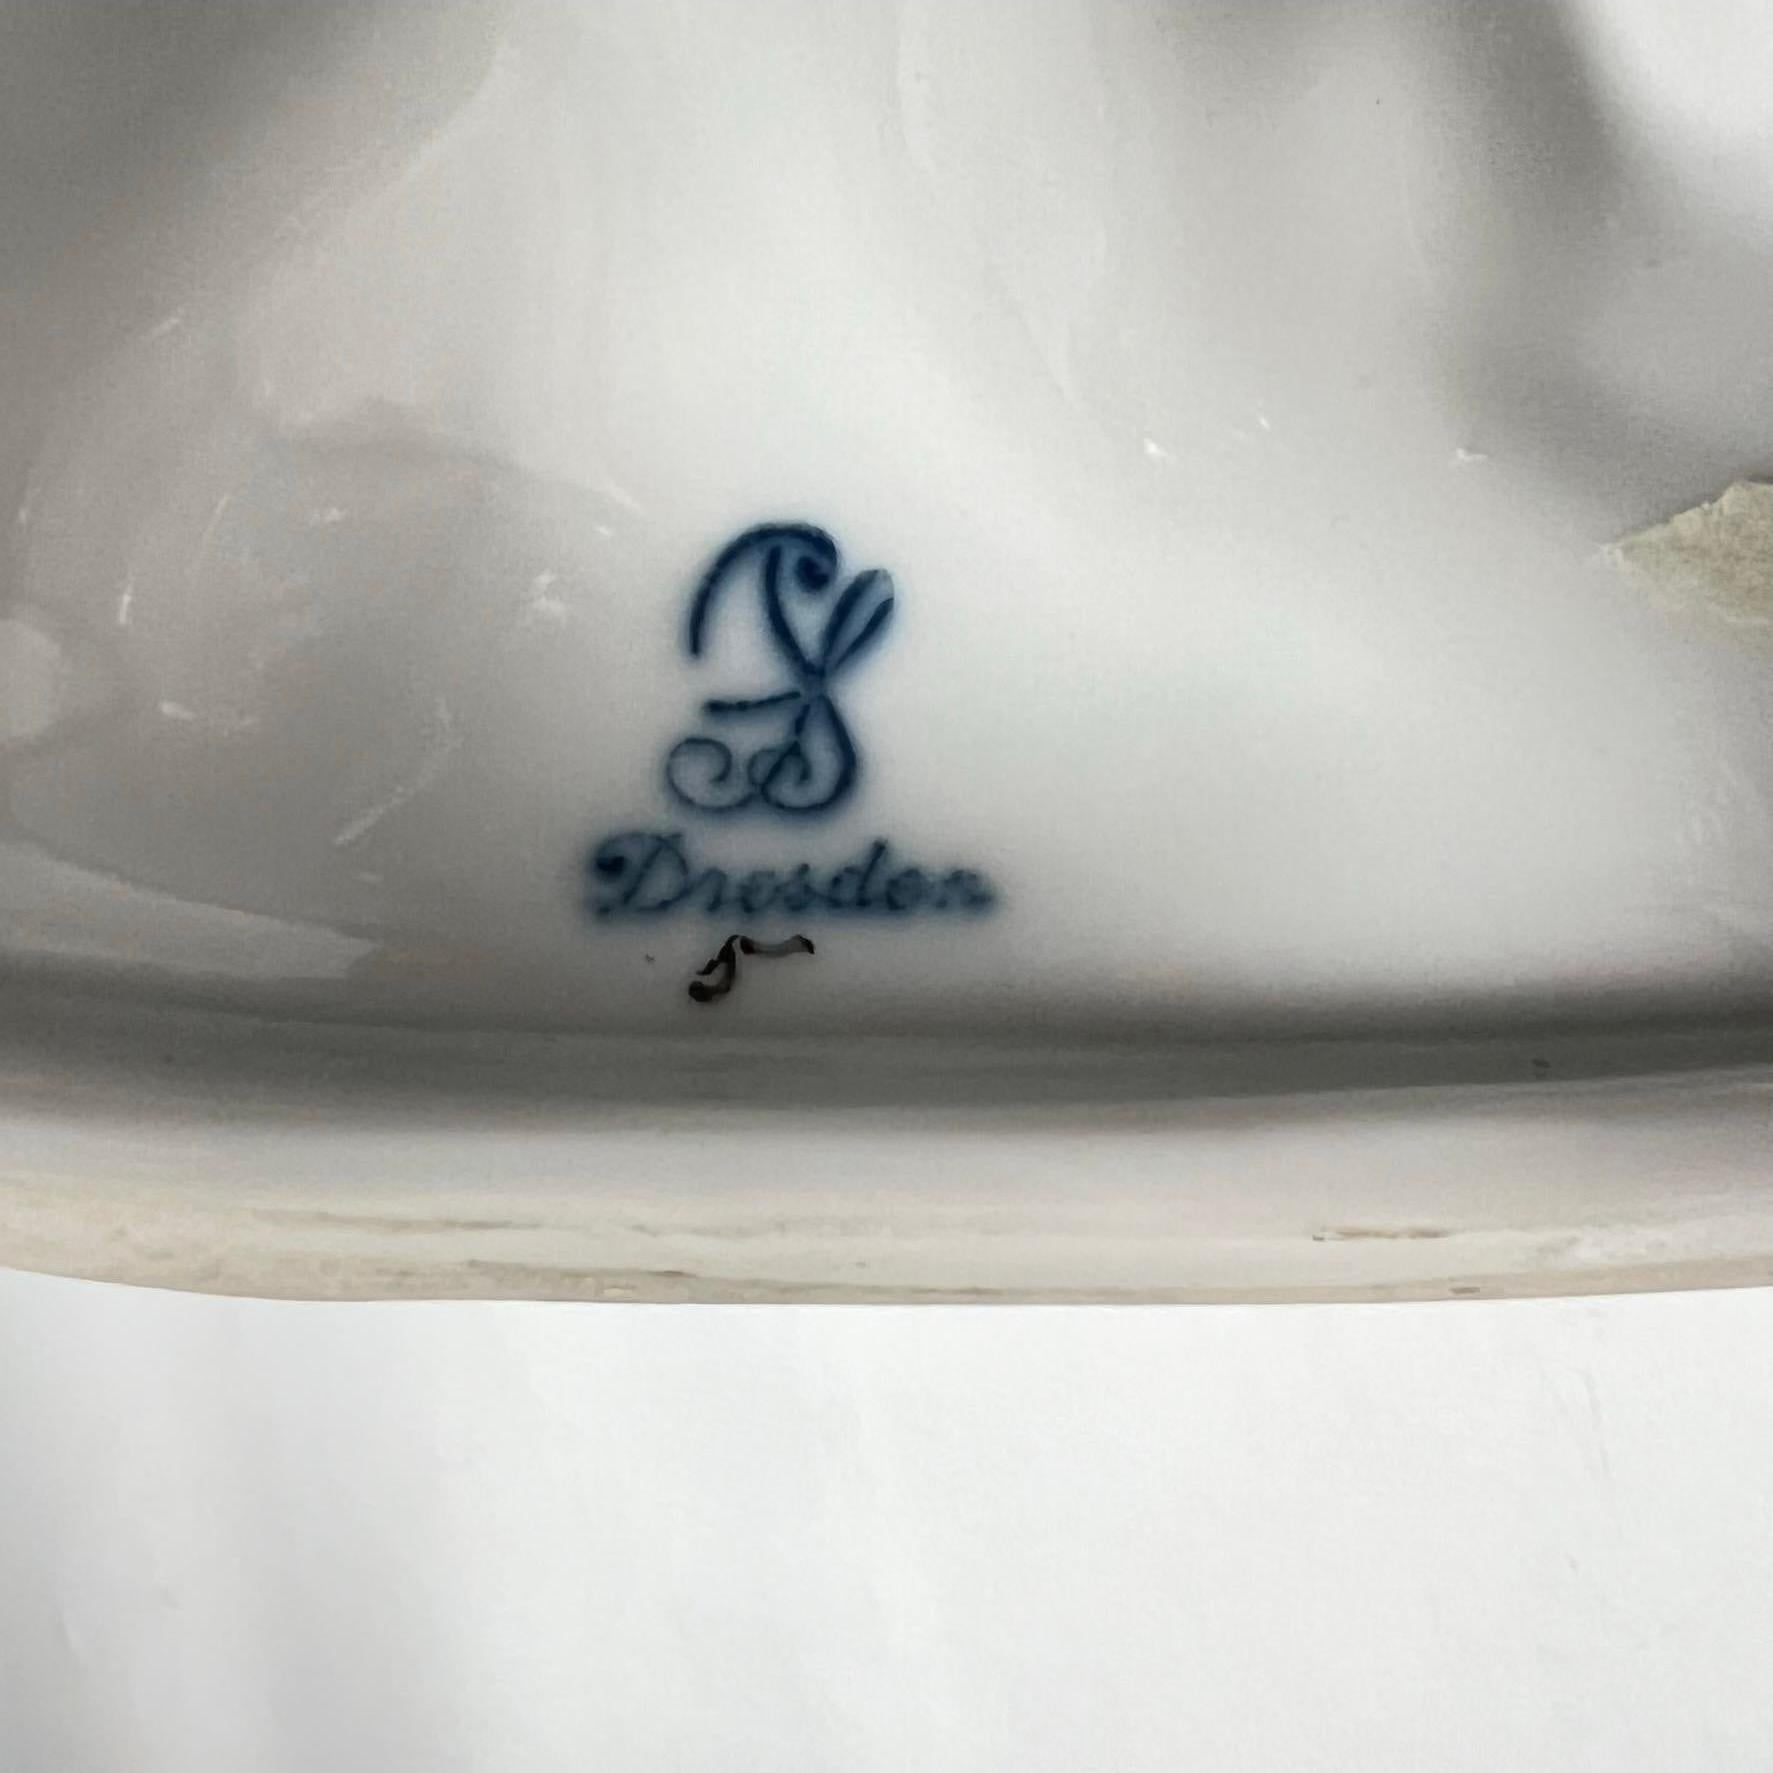 Très grande figurine en porcelaine d'un ara (ou perroquet) de la firme de Dresde de  Sächsische Porzellan-Manufaktur Dresden GmbH, alias Saxon Porcelain Manufactory in Dresden Ltd.   en excellent état. 
 Signé avec la marque bleue sous glaçure SP